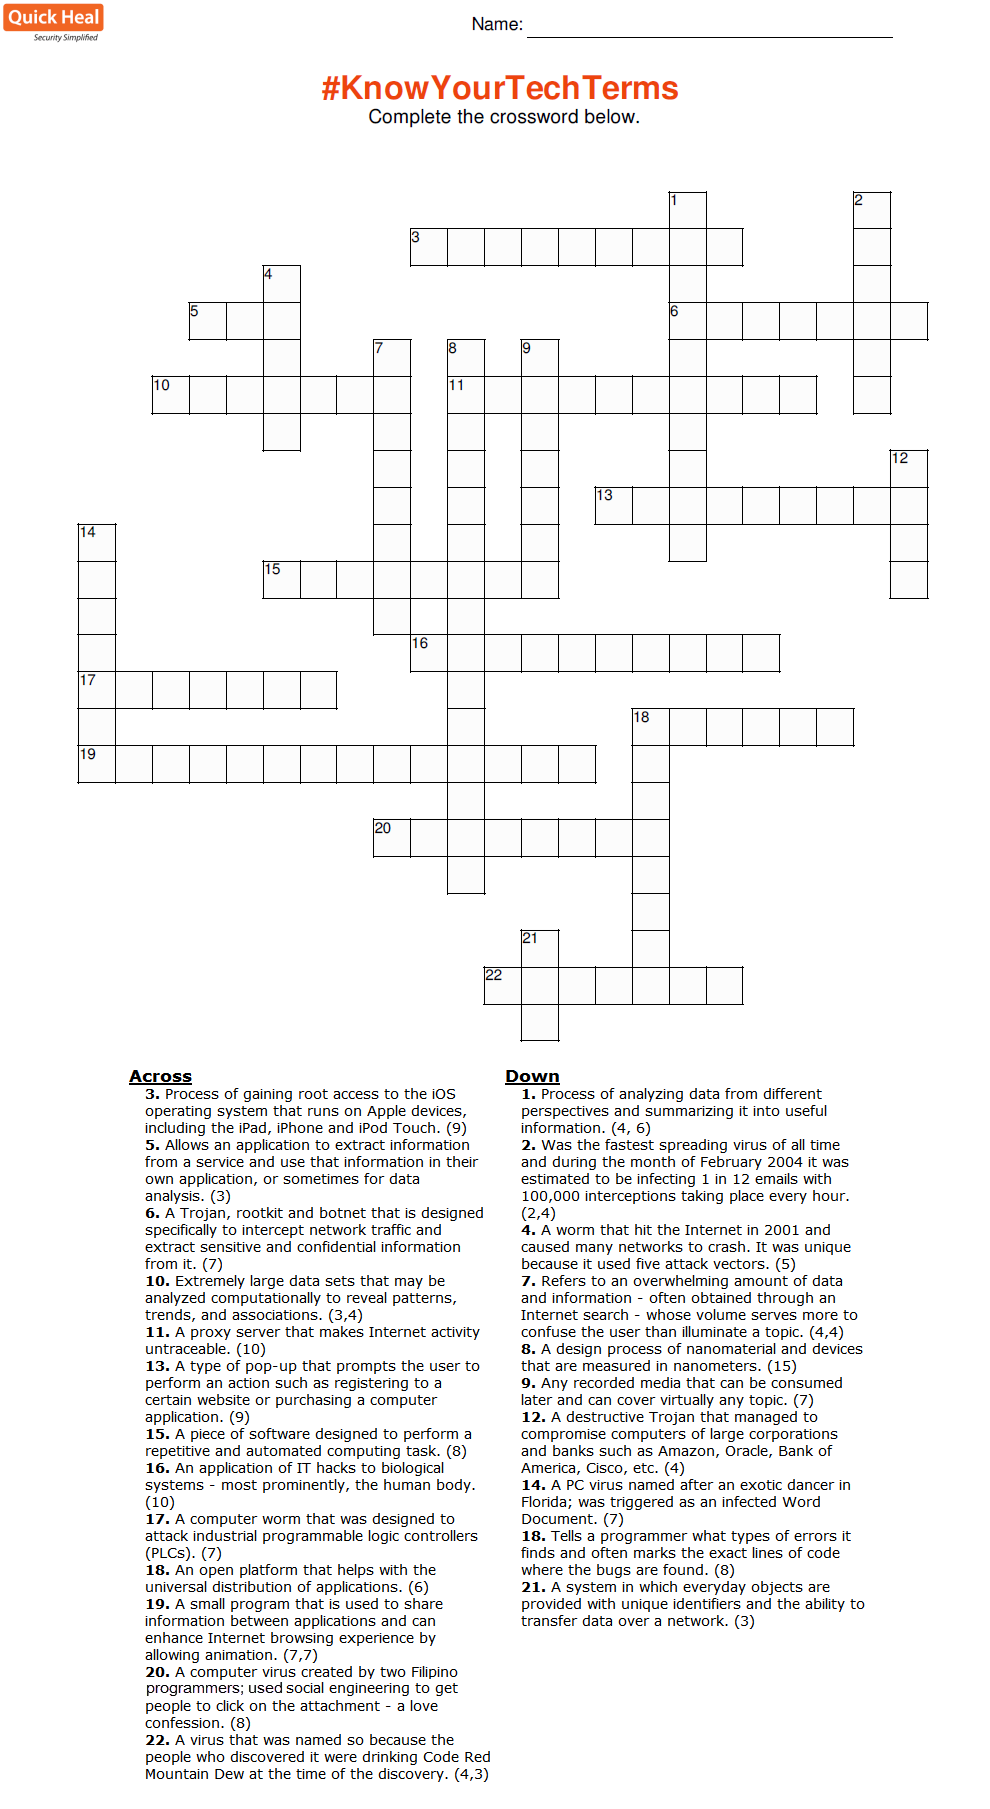 Quick Heal Crossword Contest - September